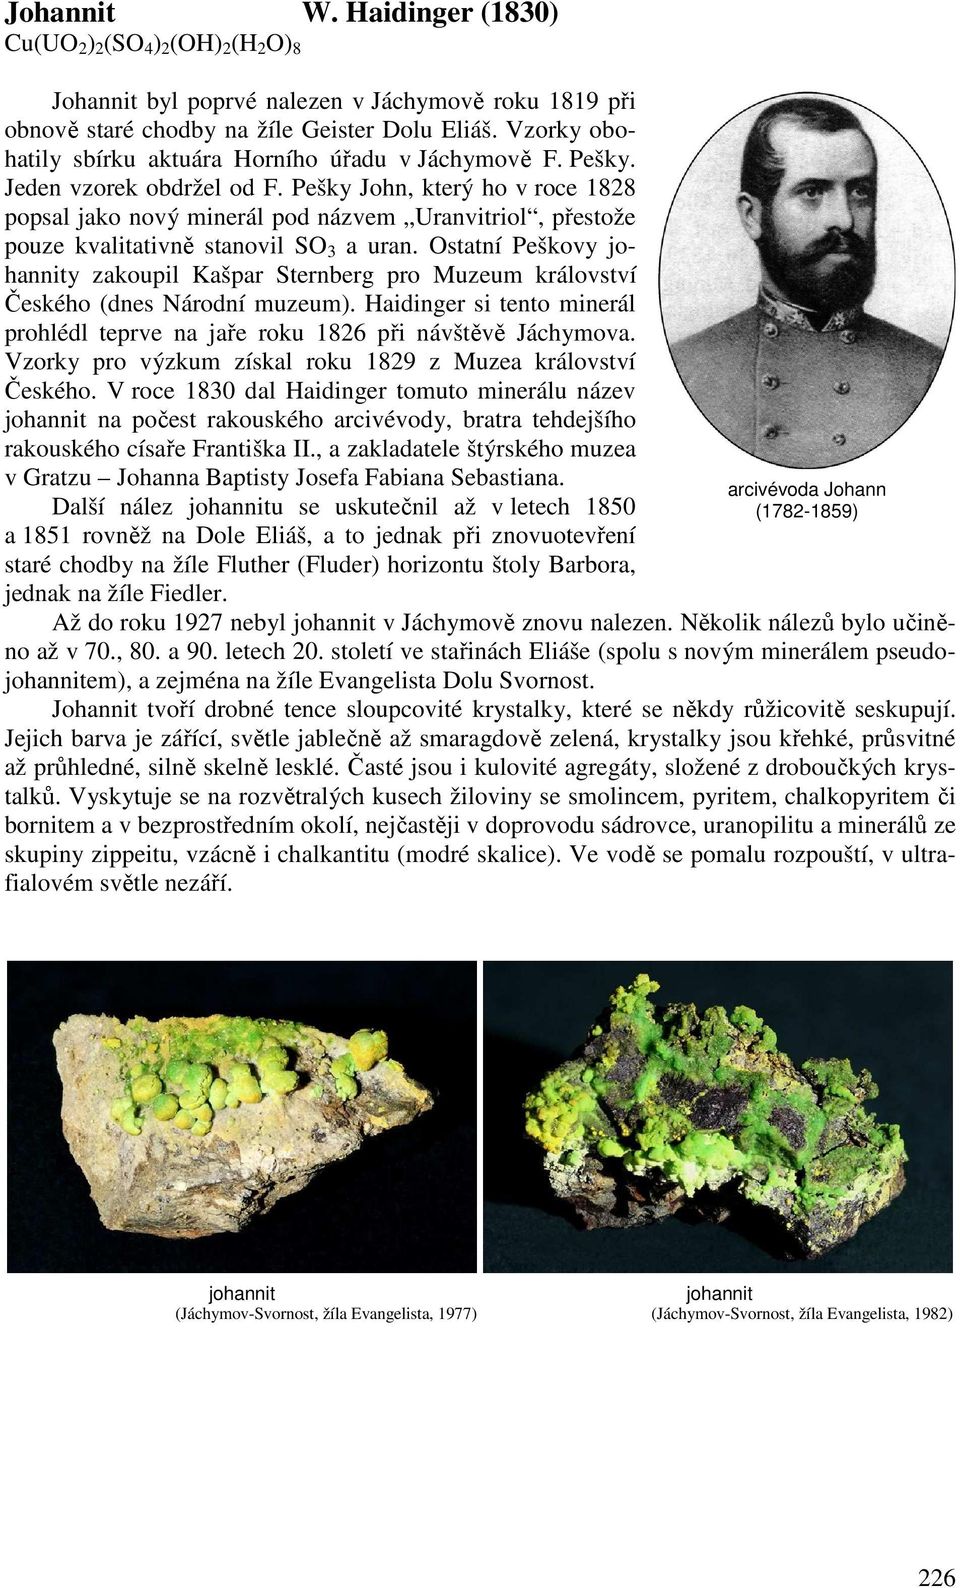 Pešky John, který ho v roce 1828 popsal jako nový minerál pod názvem Uranvitriol, přestože pouze kvalitativně stanovil SO 3 a uran.